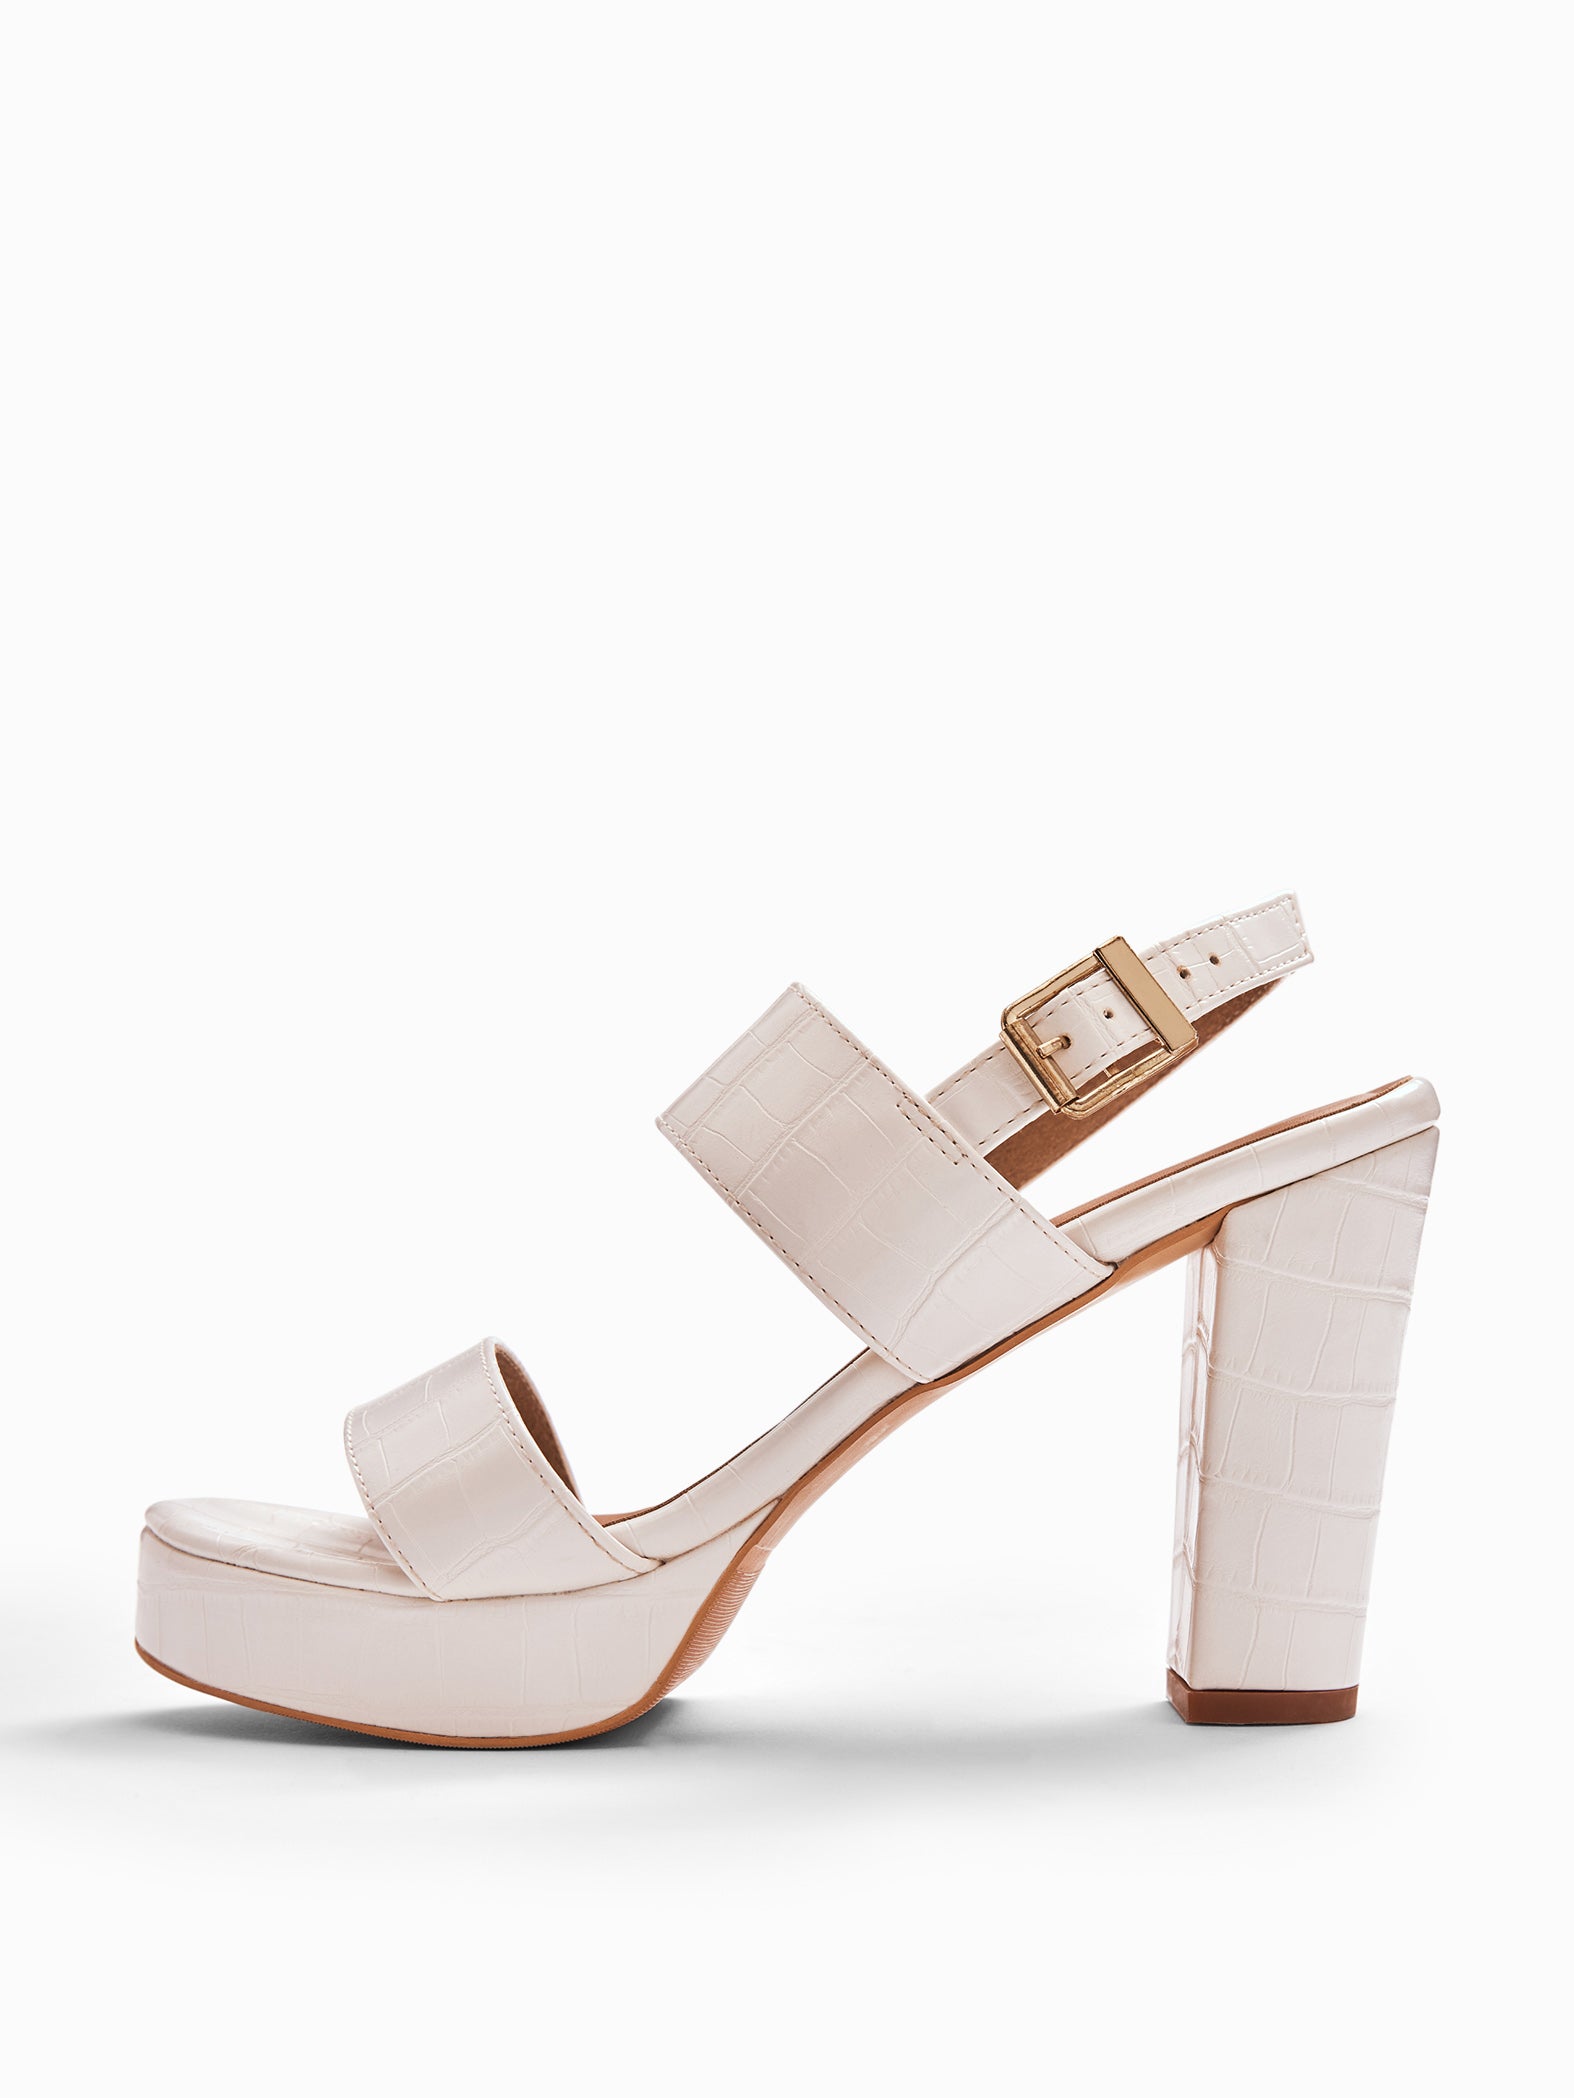 White Textured Platform Heels